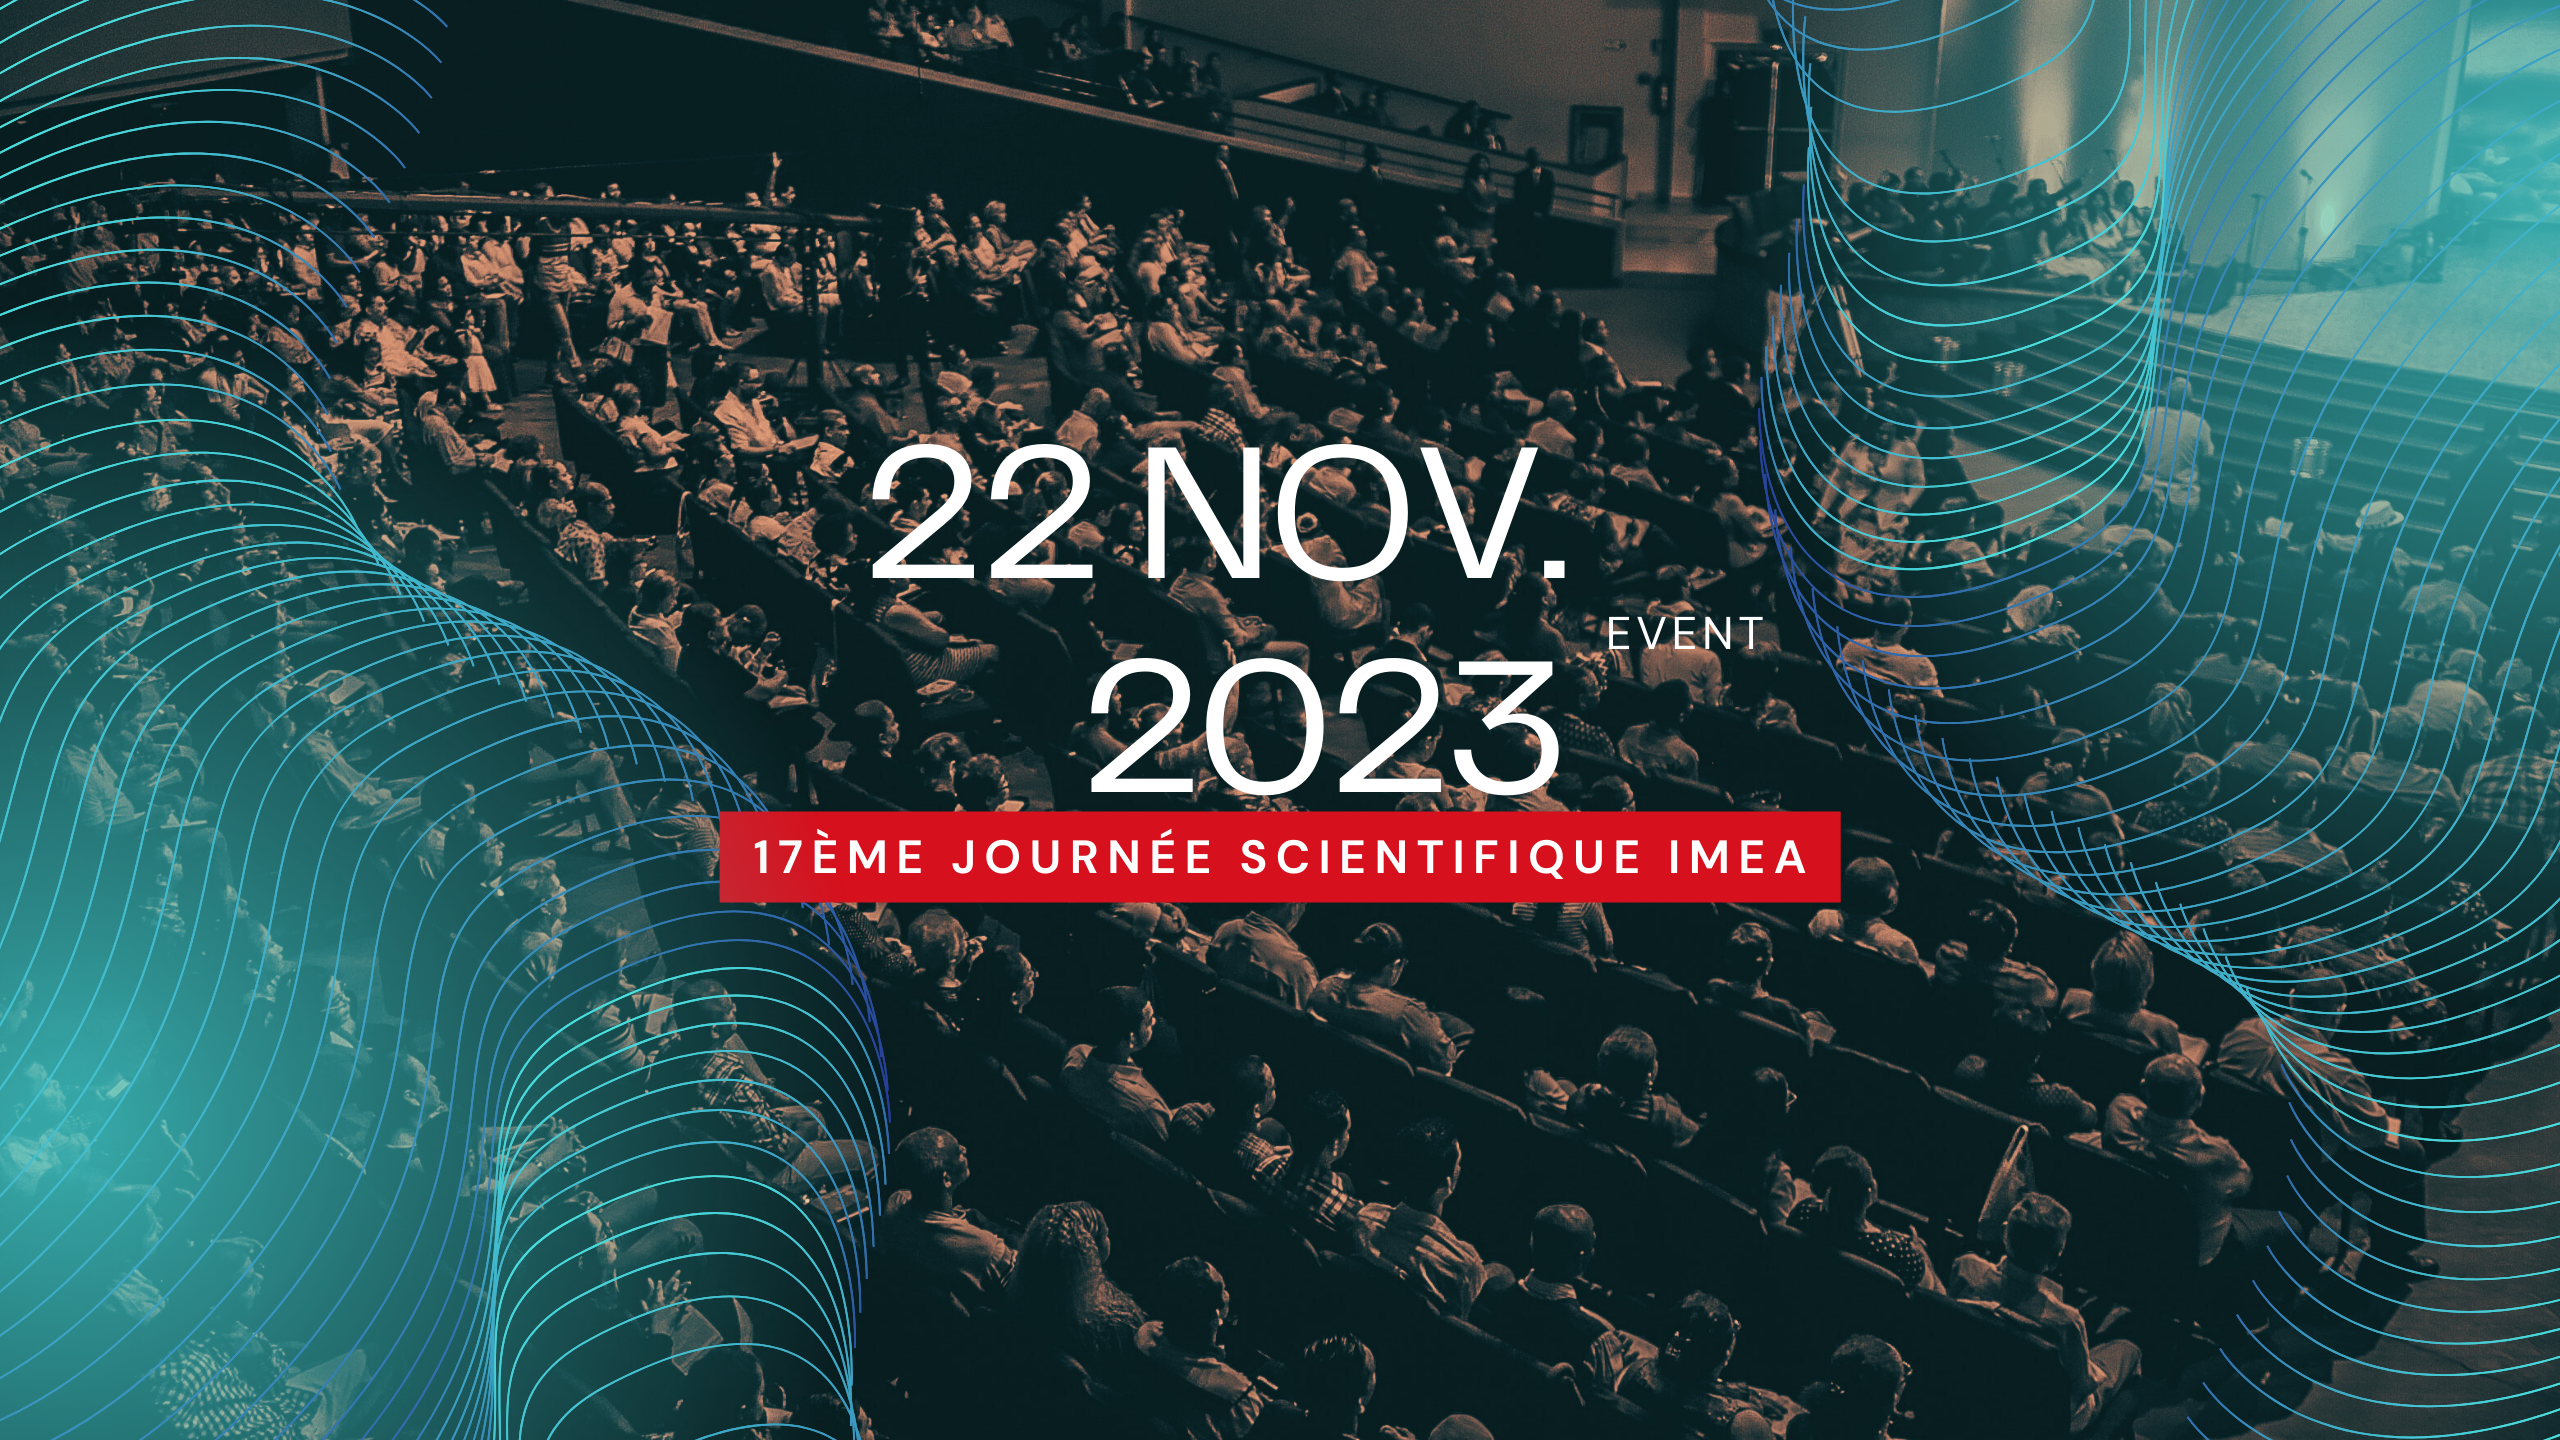 17ème Journée Scientifique IMEA